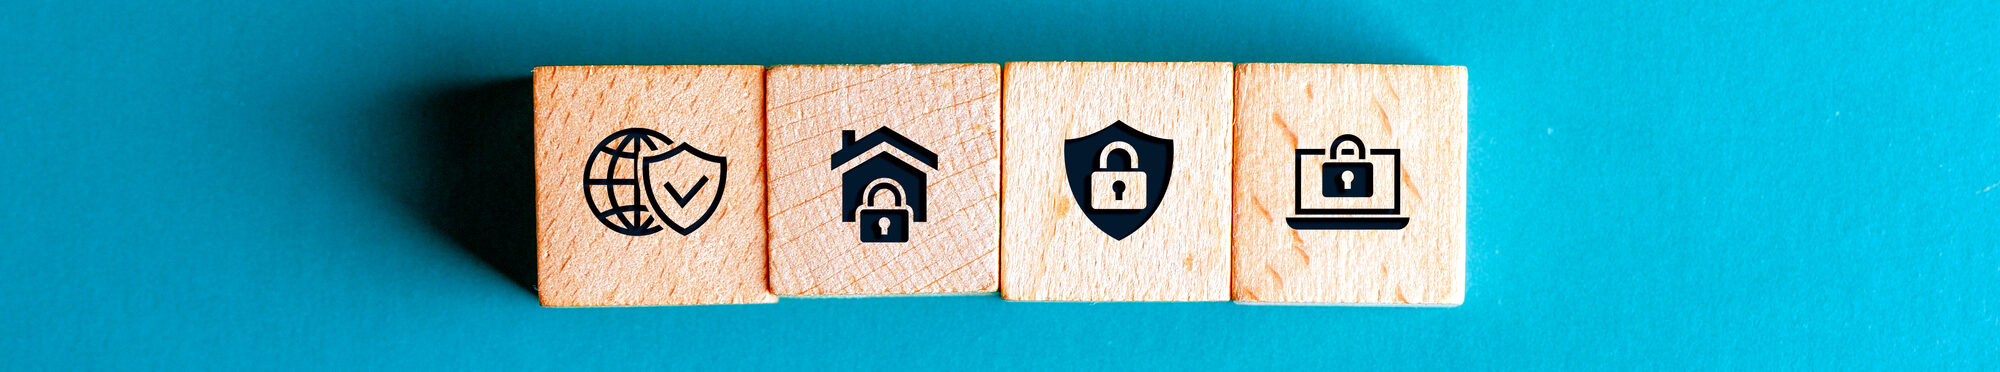 4 Bausteine aus Holz mit Sicherheitssymbolen. Blauer Hintergrund